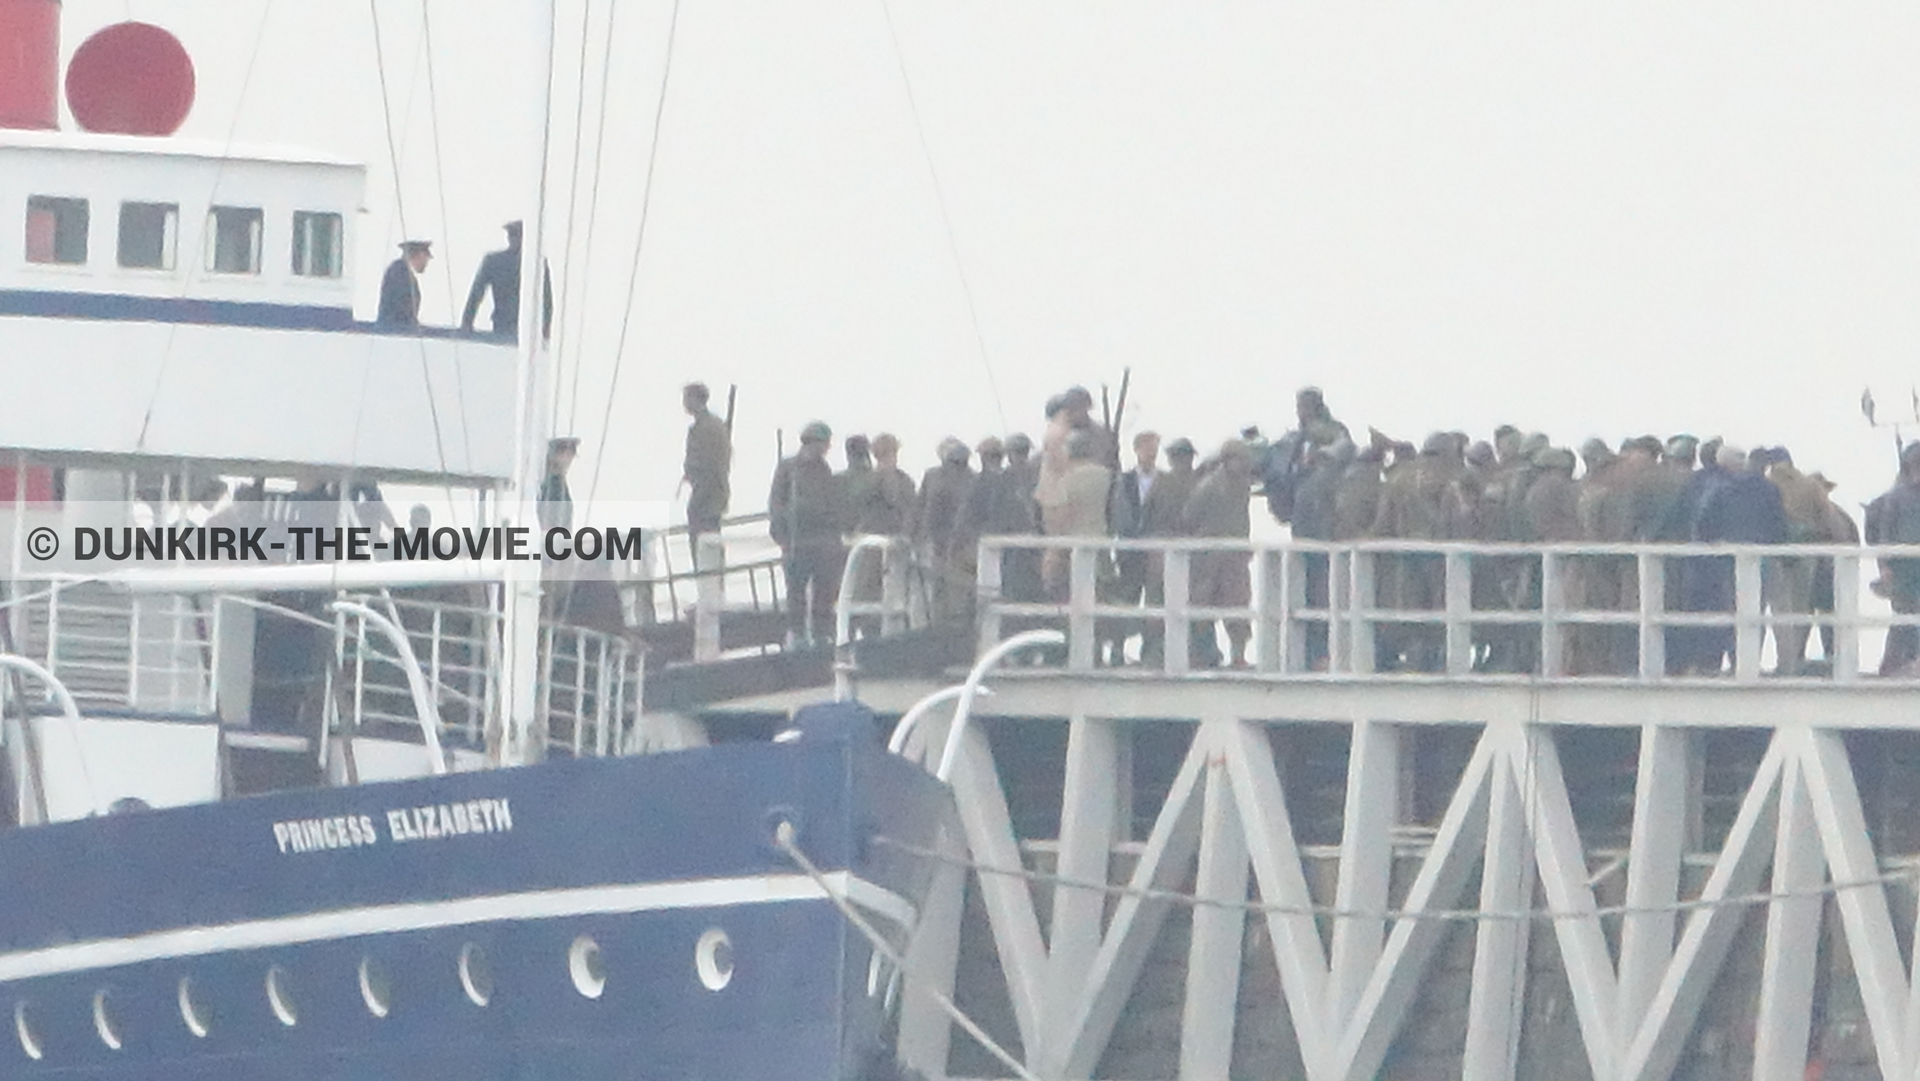 Photo avec ciel gris, figurants, jetée EST, Princess Elizabeth,  des dessous du Film Dunkerque de Nolan